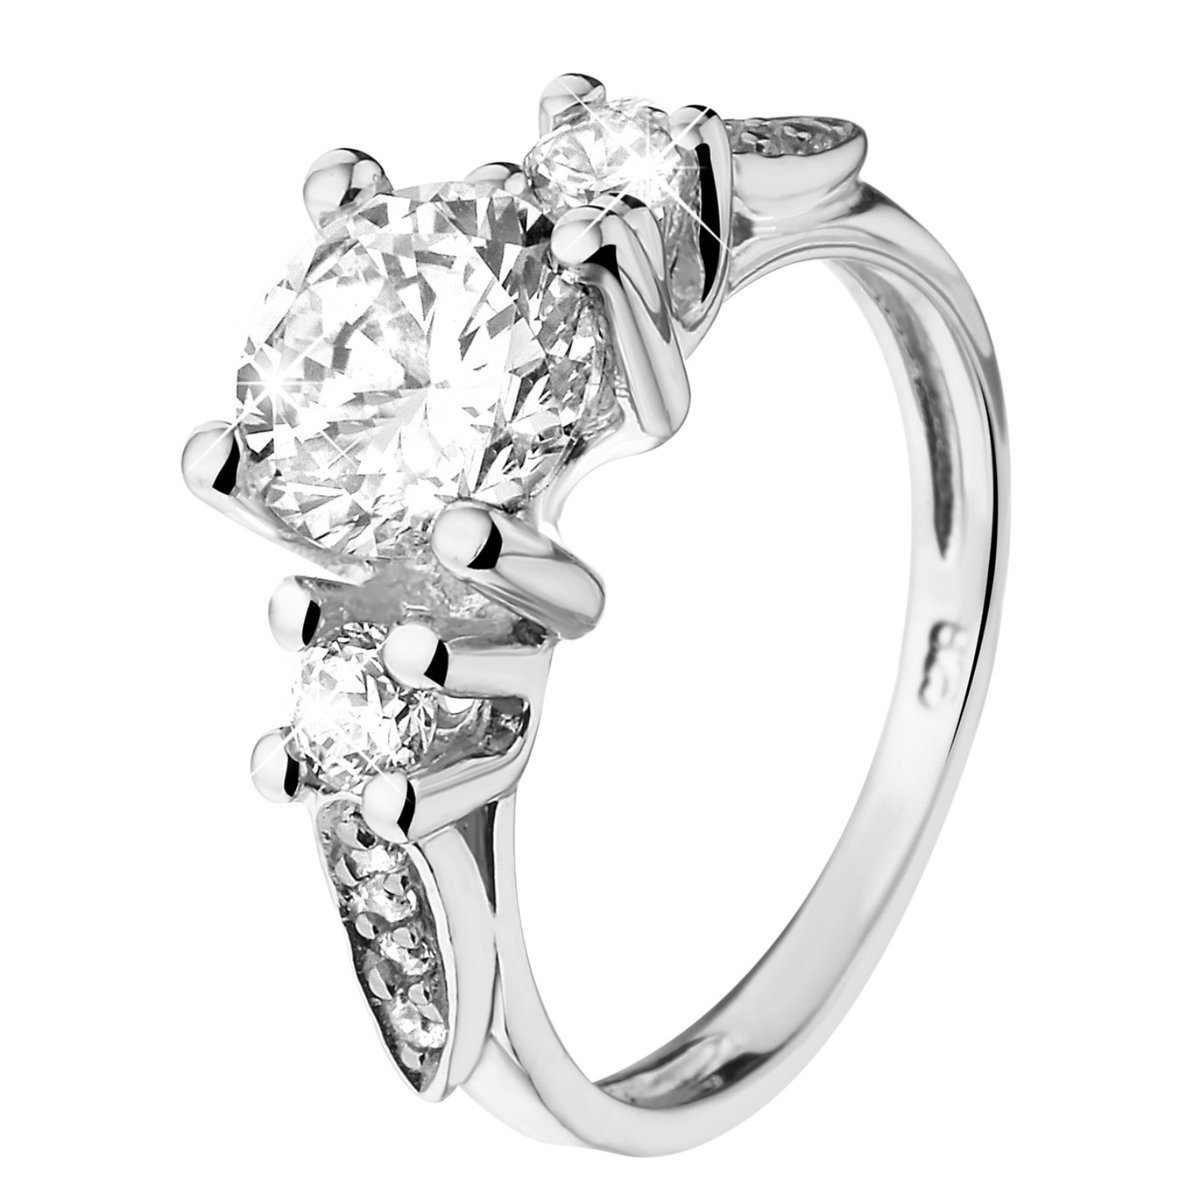 Lucardi - Dames Ring met zirkonia - Ring - Cadeau - Echt Zilver - Zilverkleurig